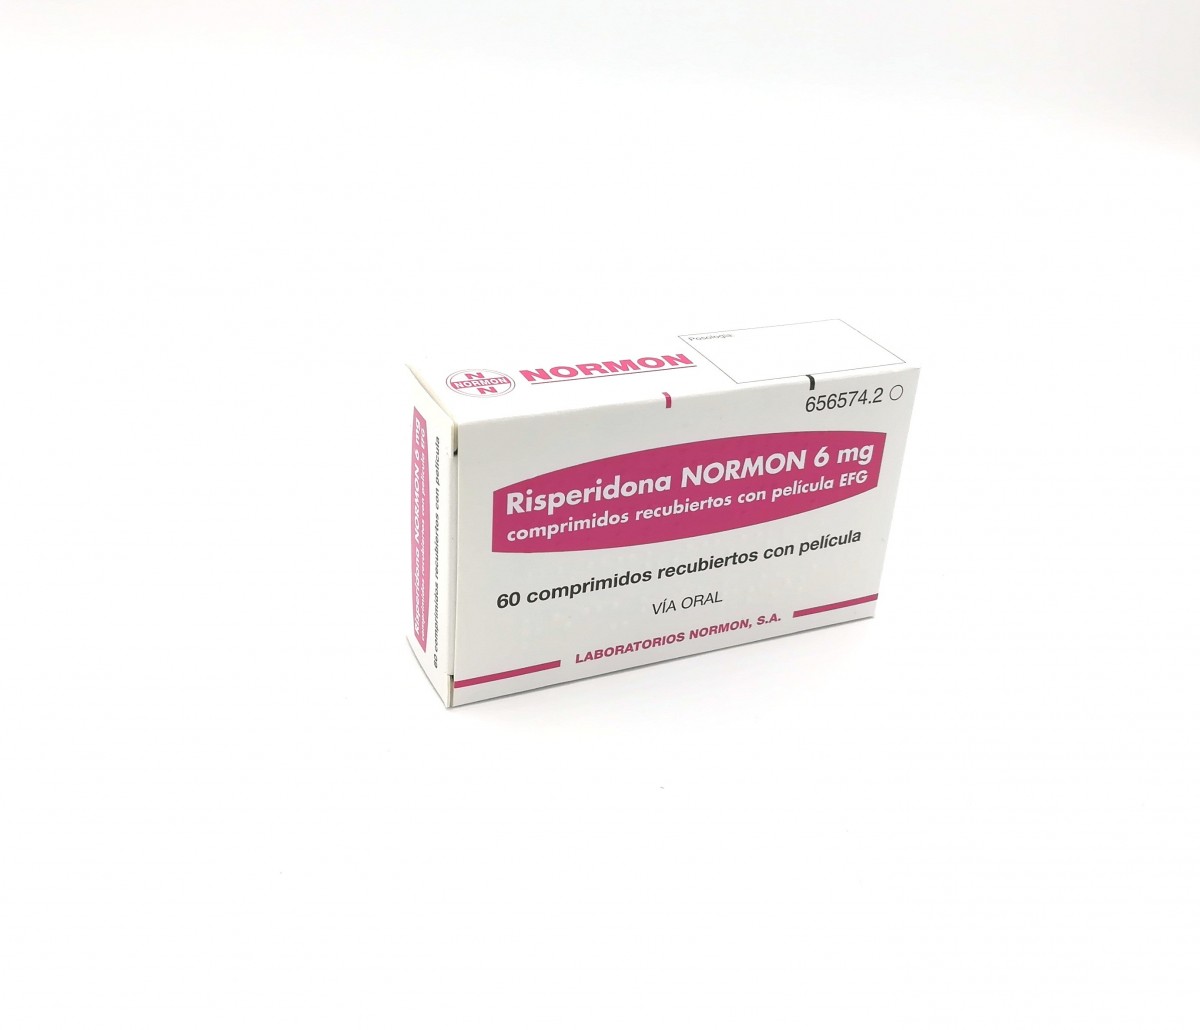 RISPERIDONA NORMON 6 mg COMPRIMIDOS RECUBIERTOS CON PELICULA EFG, 60 comprimidos fotografía del envase.